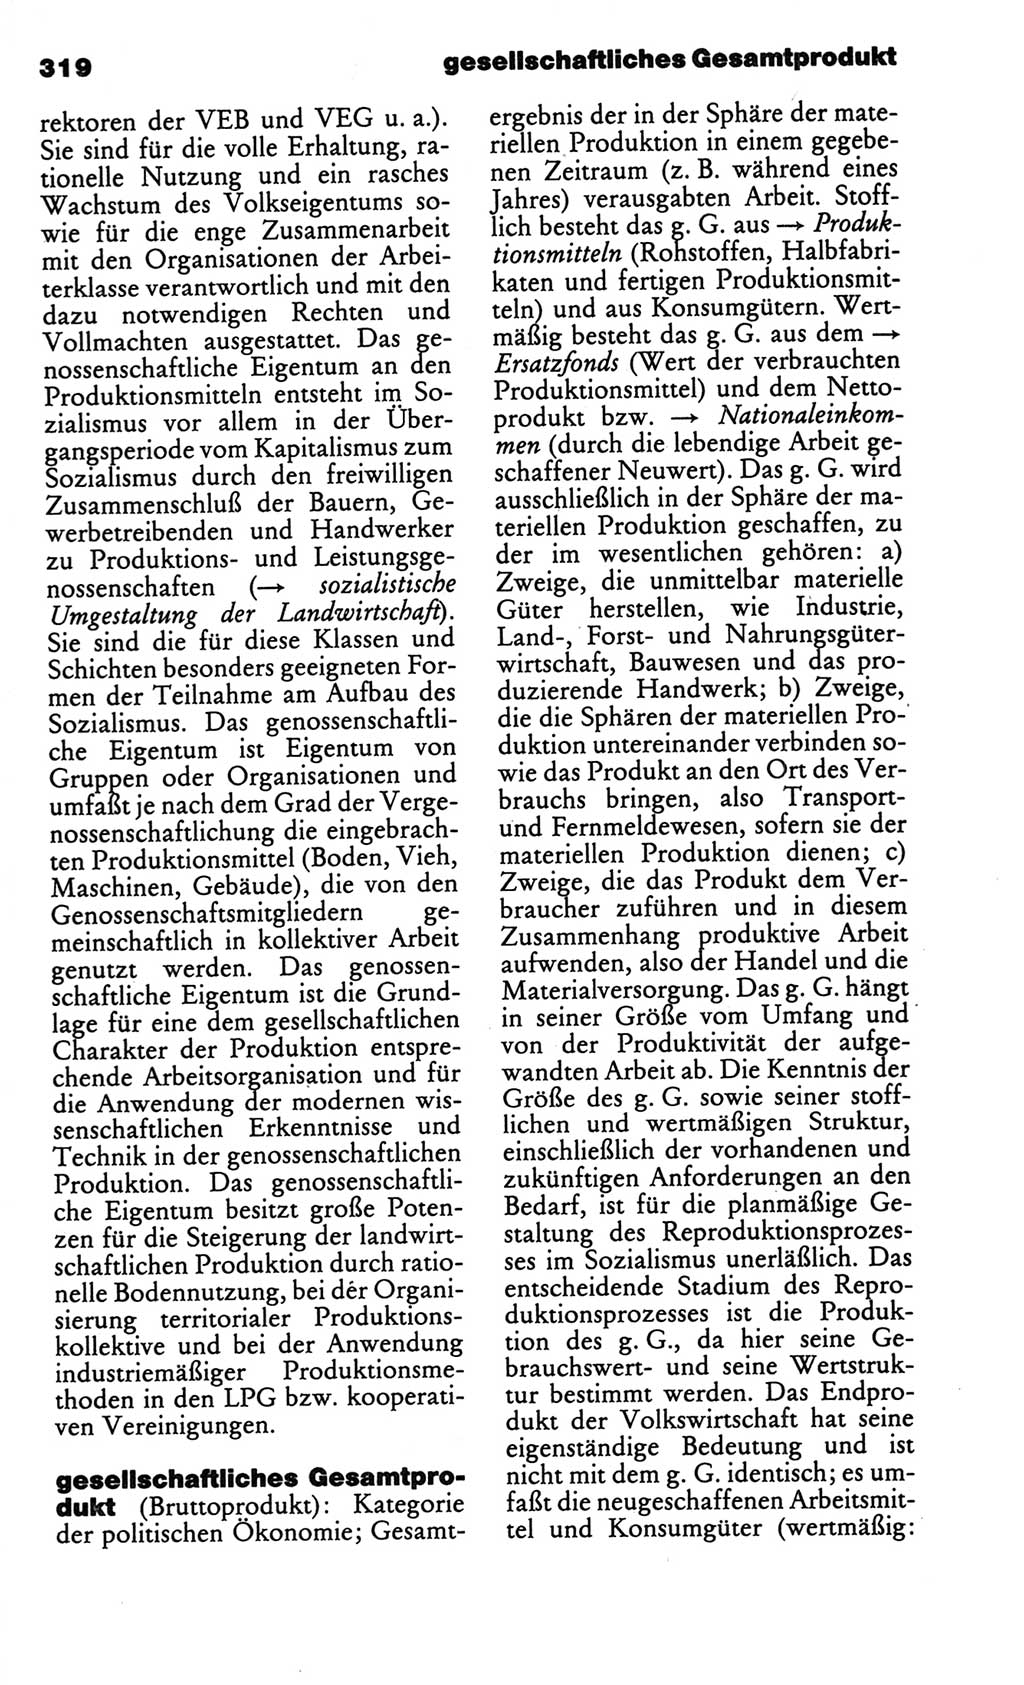 Kleines politisches Wörterbuch [Deutsche Demokratische Republik (DDR)] 1986, Seite 319 (Kl. pol. Wb. DDR 1986, S. 319)